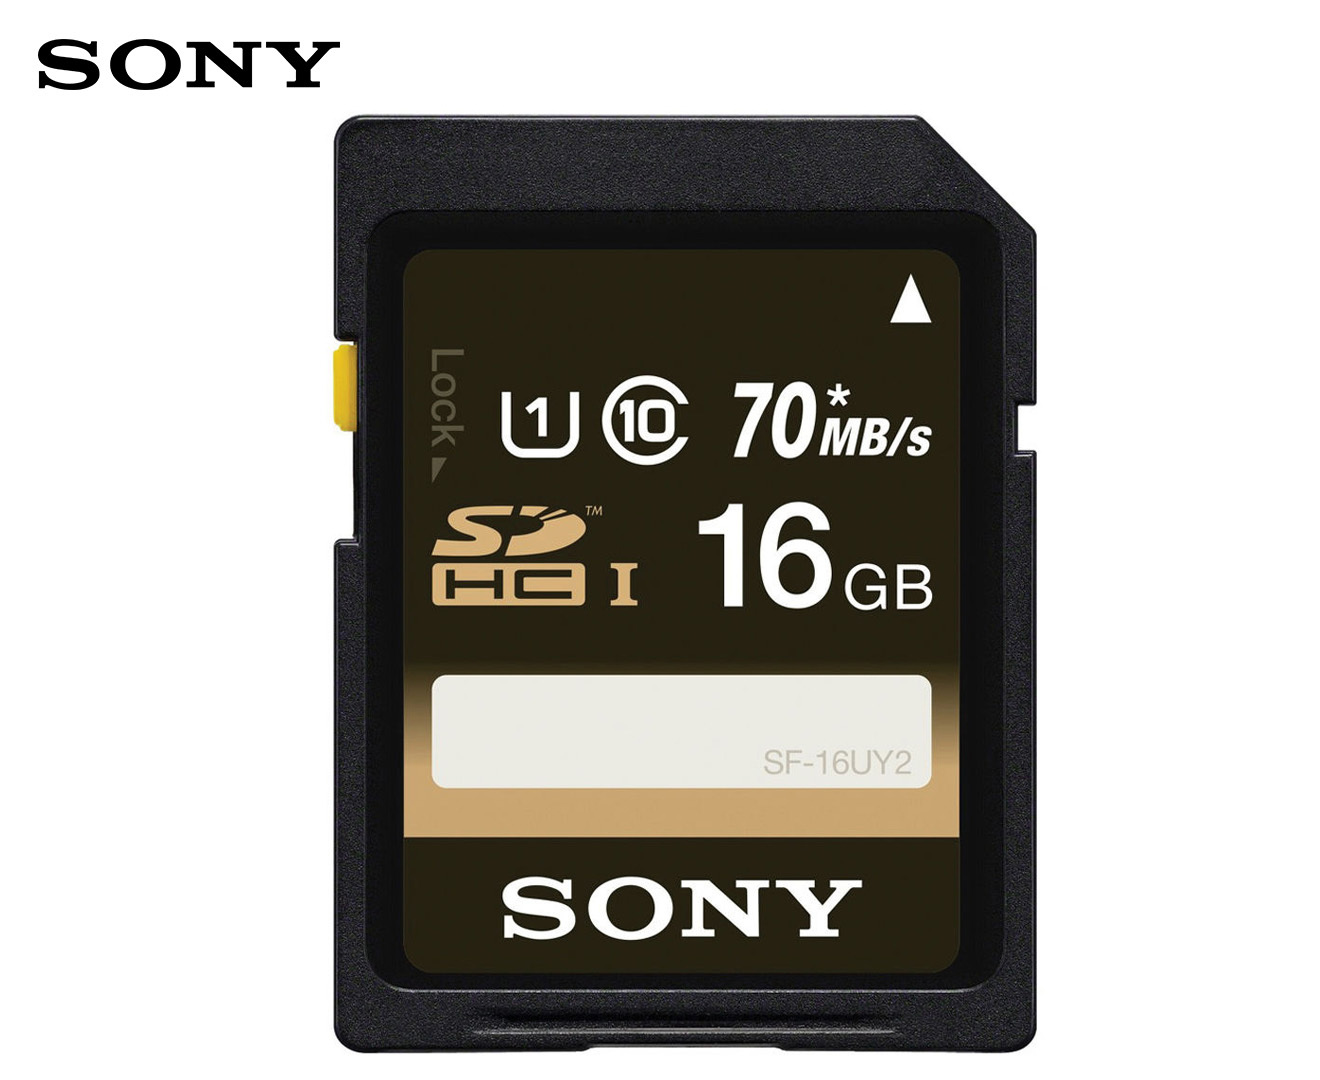 Sony UHS-I Class 10 SDXC/SDHC 16GB Memory Card